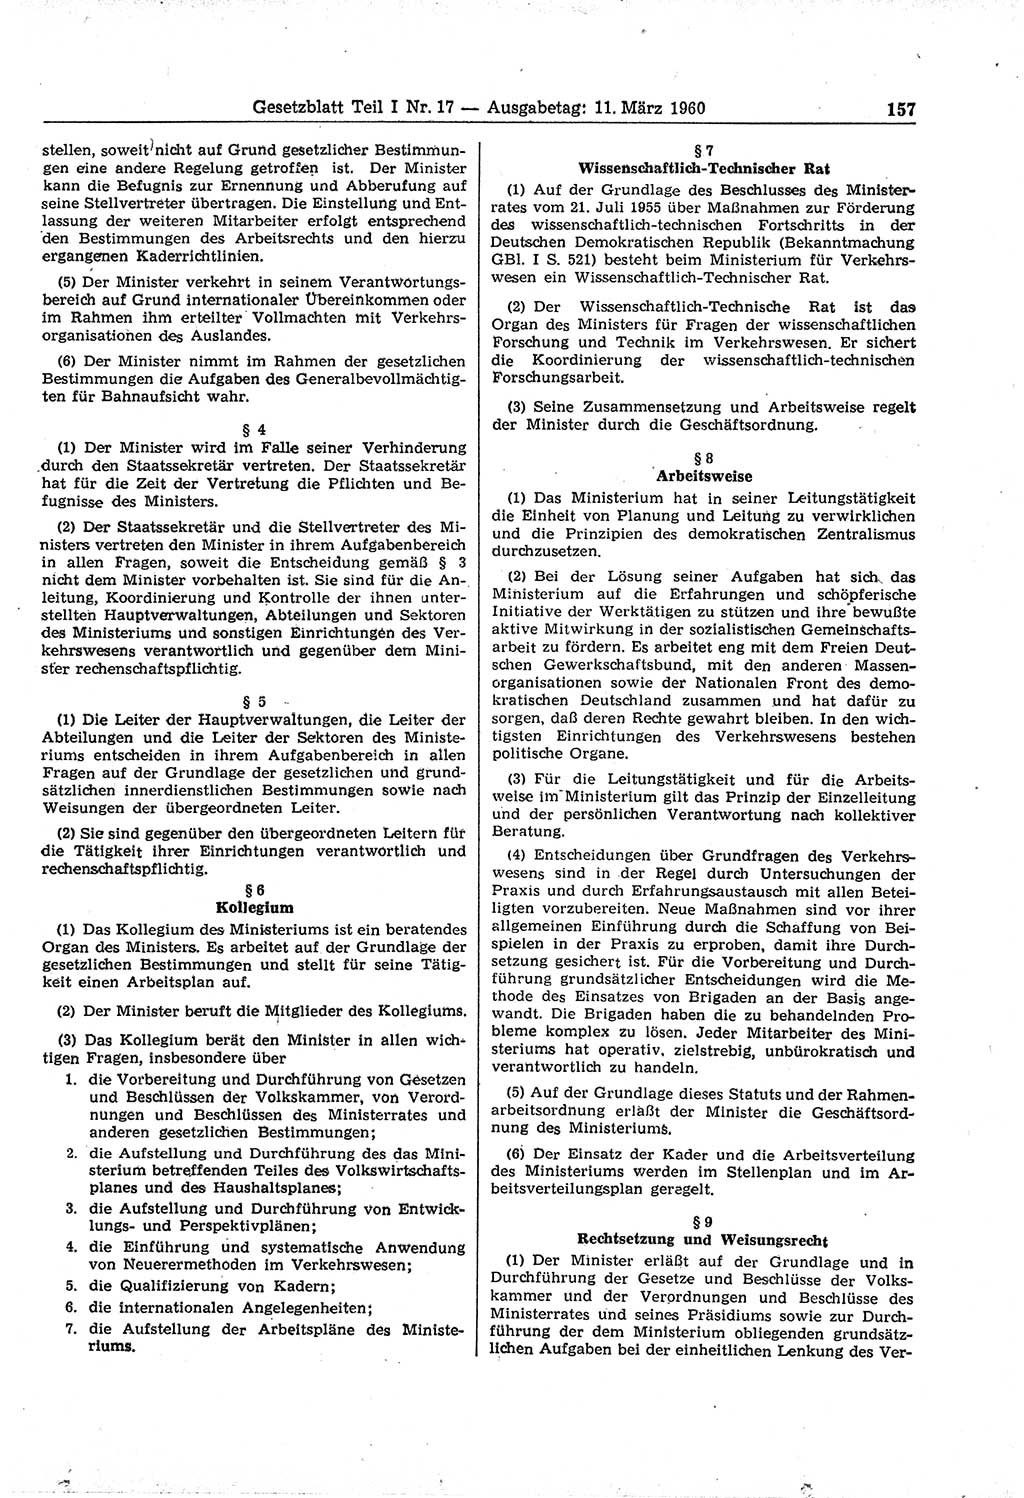 Gesetzblatt (GBl.) der Deutschen Demokratischen Republik (DDR) Teil Ⅰ 1960, Seite 157 (GBl. DDR Ⅰ 1960, S. 157)